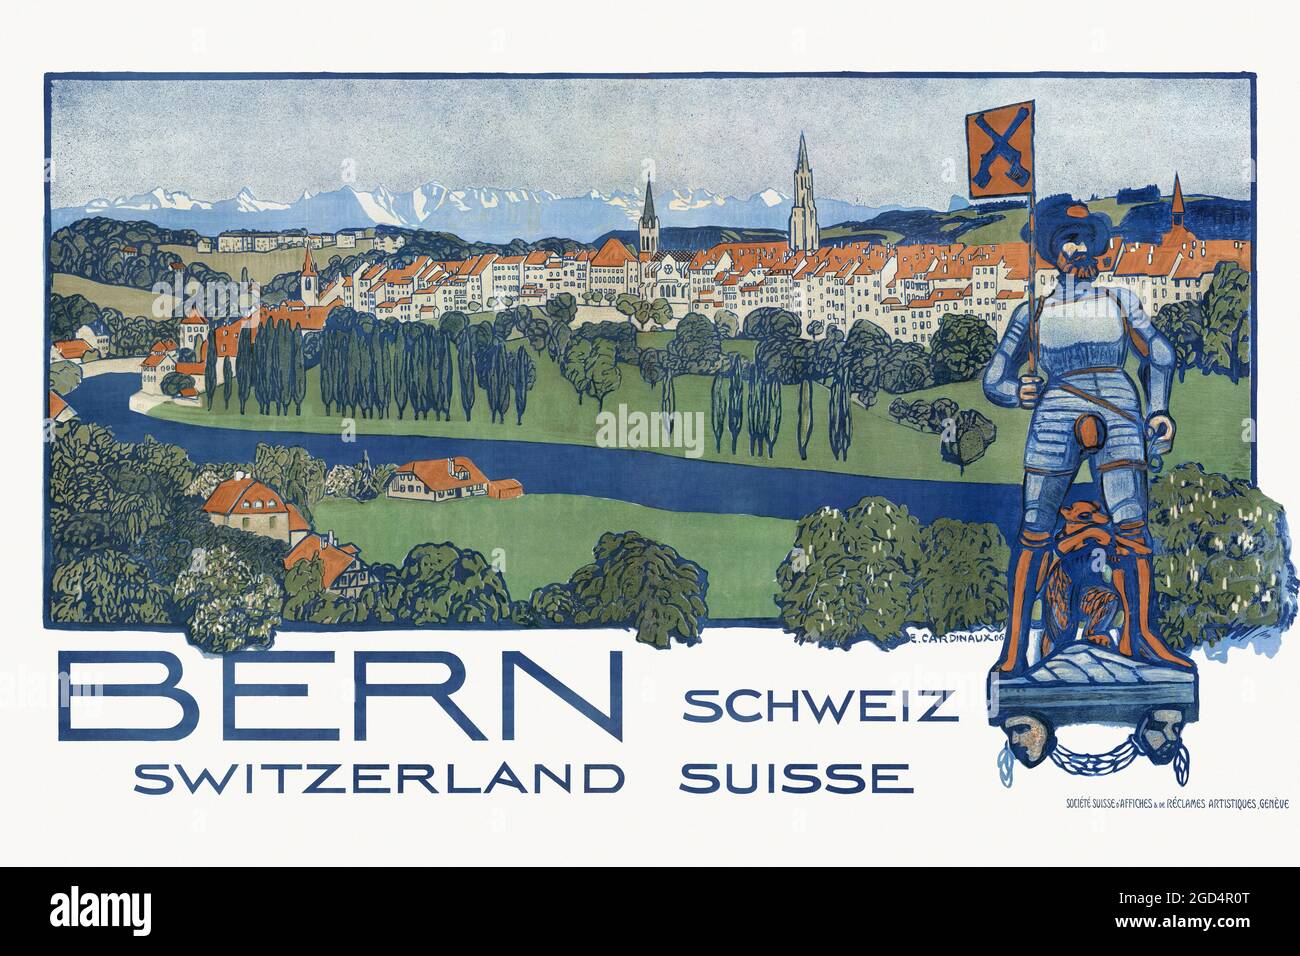 Bern. Schweiz - Switzerland - Suisse by Emil Cardinaux (1877-1936). Restored vintage poster published in 1906 in Switzerland. Stock Photo